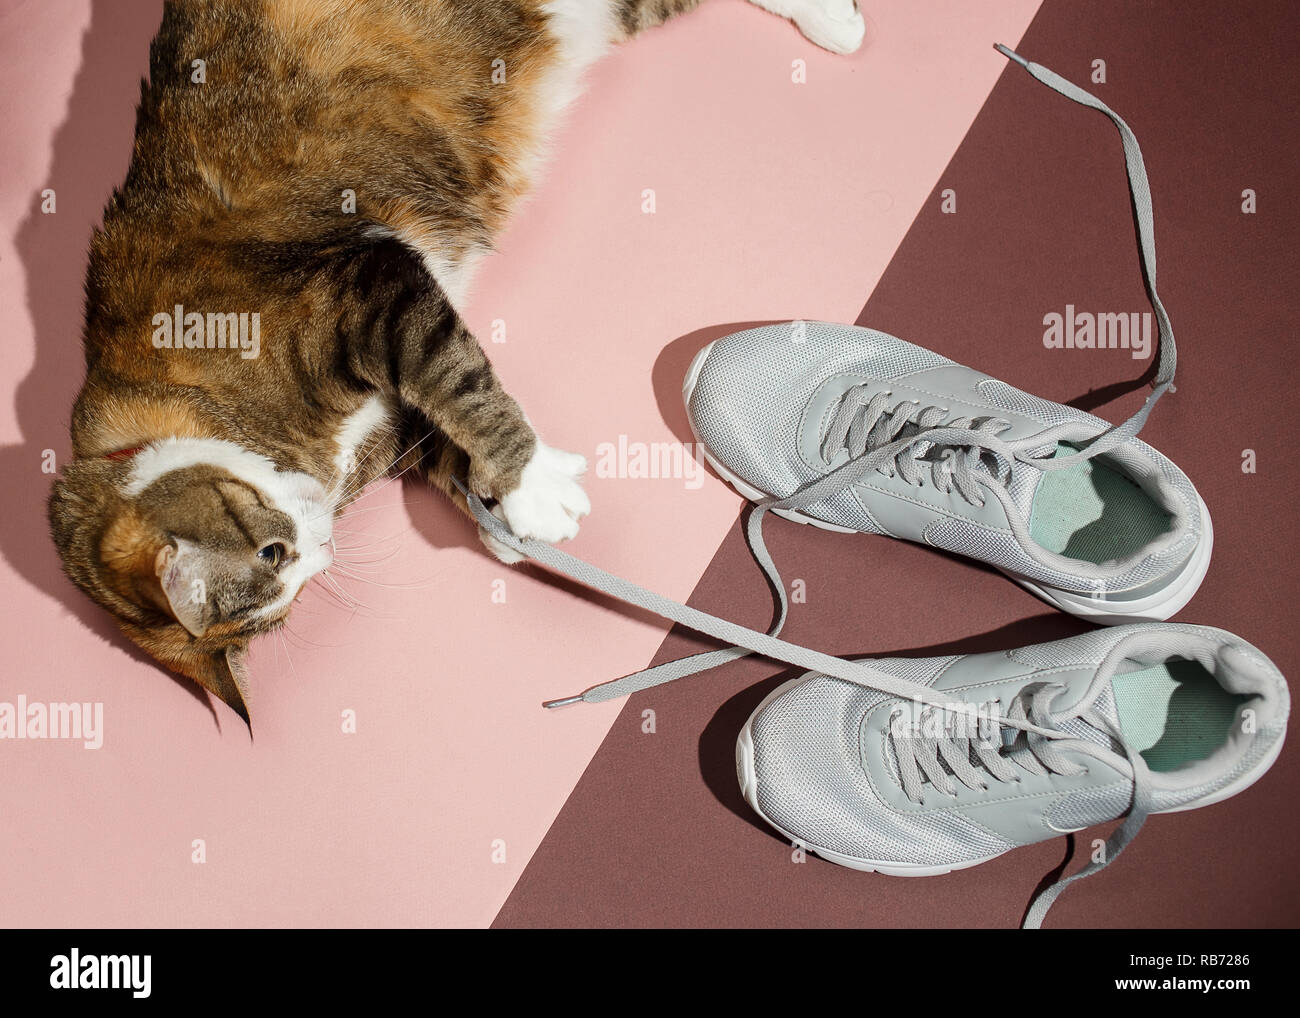 Hübsche rothaarige Katze spielt mit Schnürsenkel Sneakers auf Pink und Braun. Ansicht von oben, flach. Stockfoto